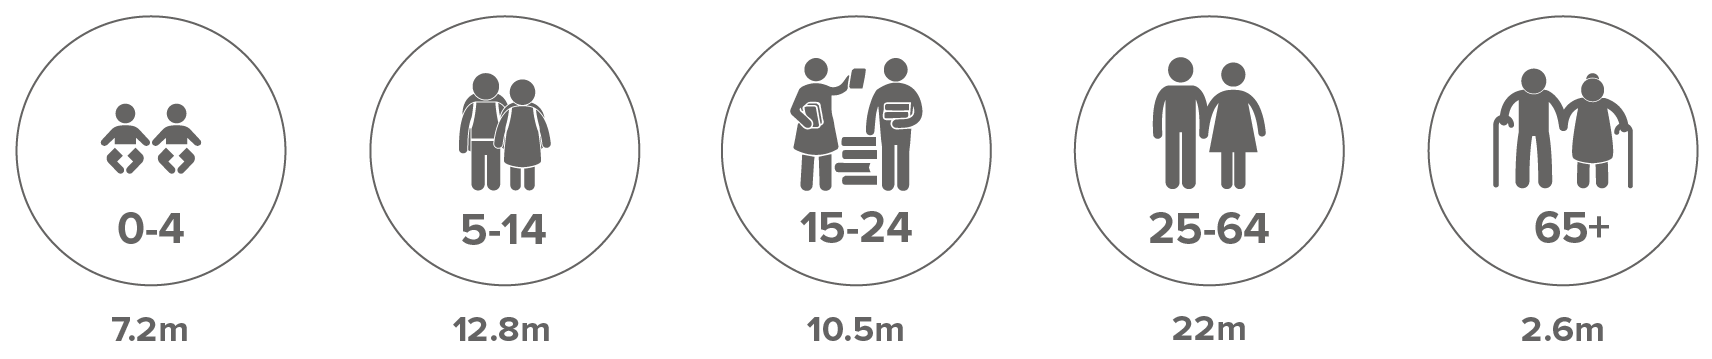 Número estimado de personas de diferentes grupos de edad que viven en situación de desplazamiento interno como consecuencia de conflictos, violencia y desastres en todo el mundo a finales de 2020